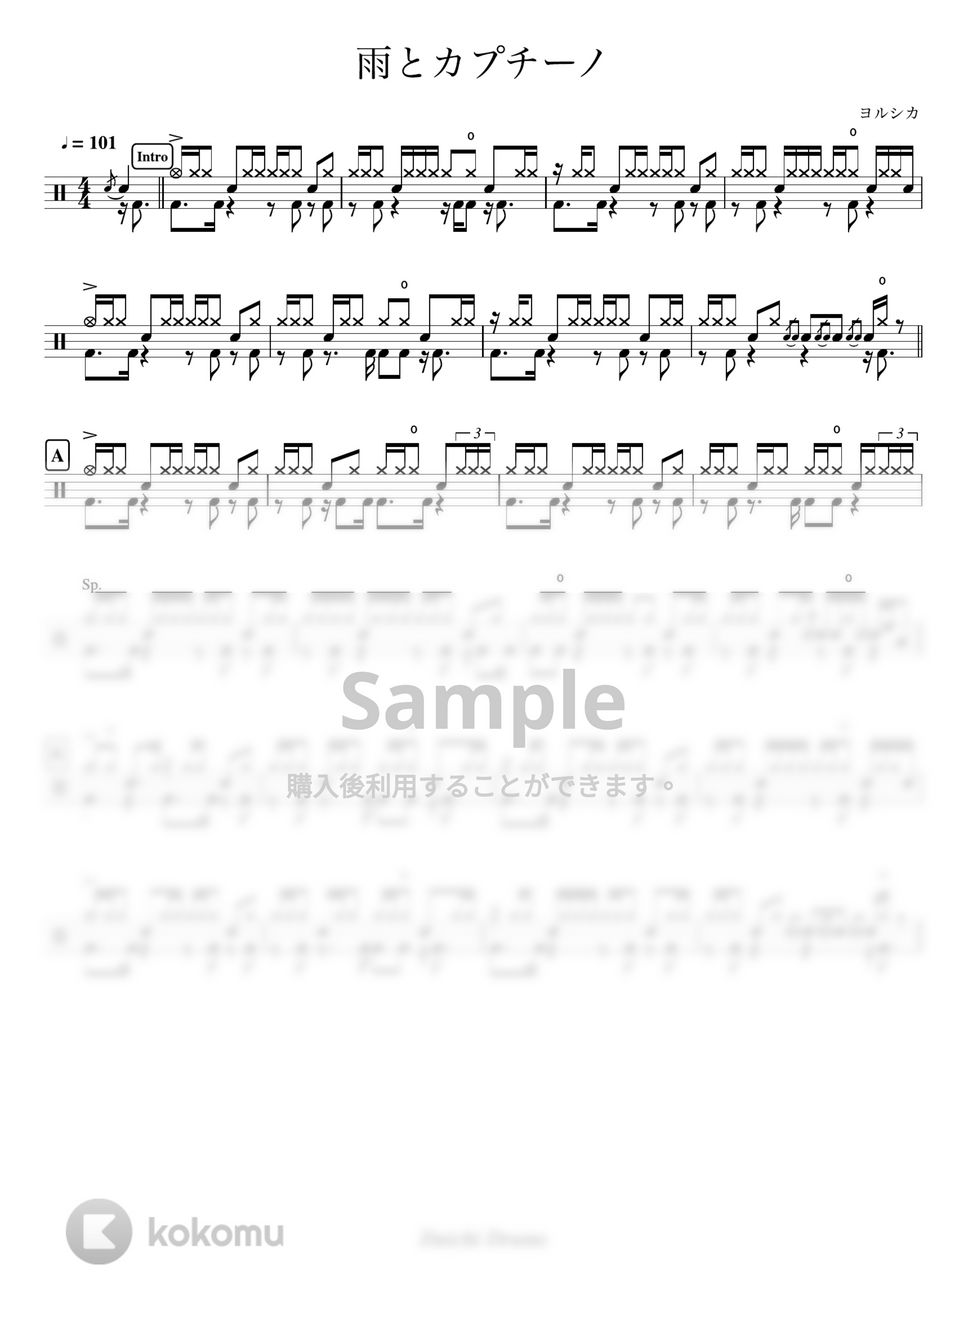 ヨルシカ - 雨とカプチーノ by Daichi Drums